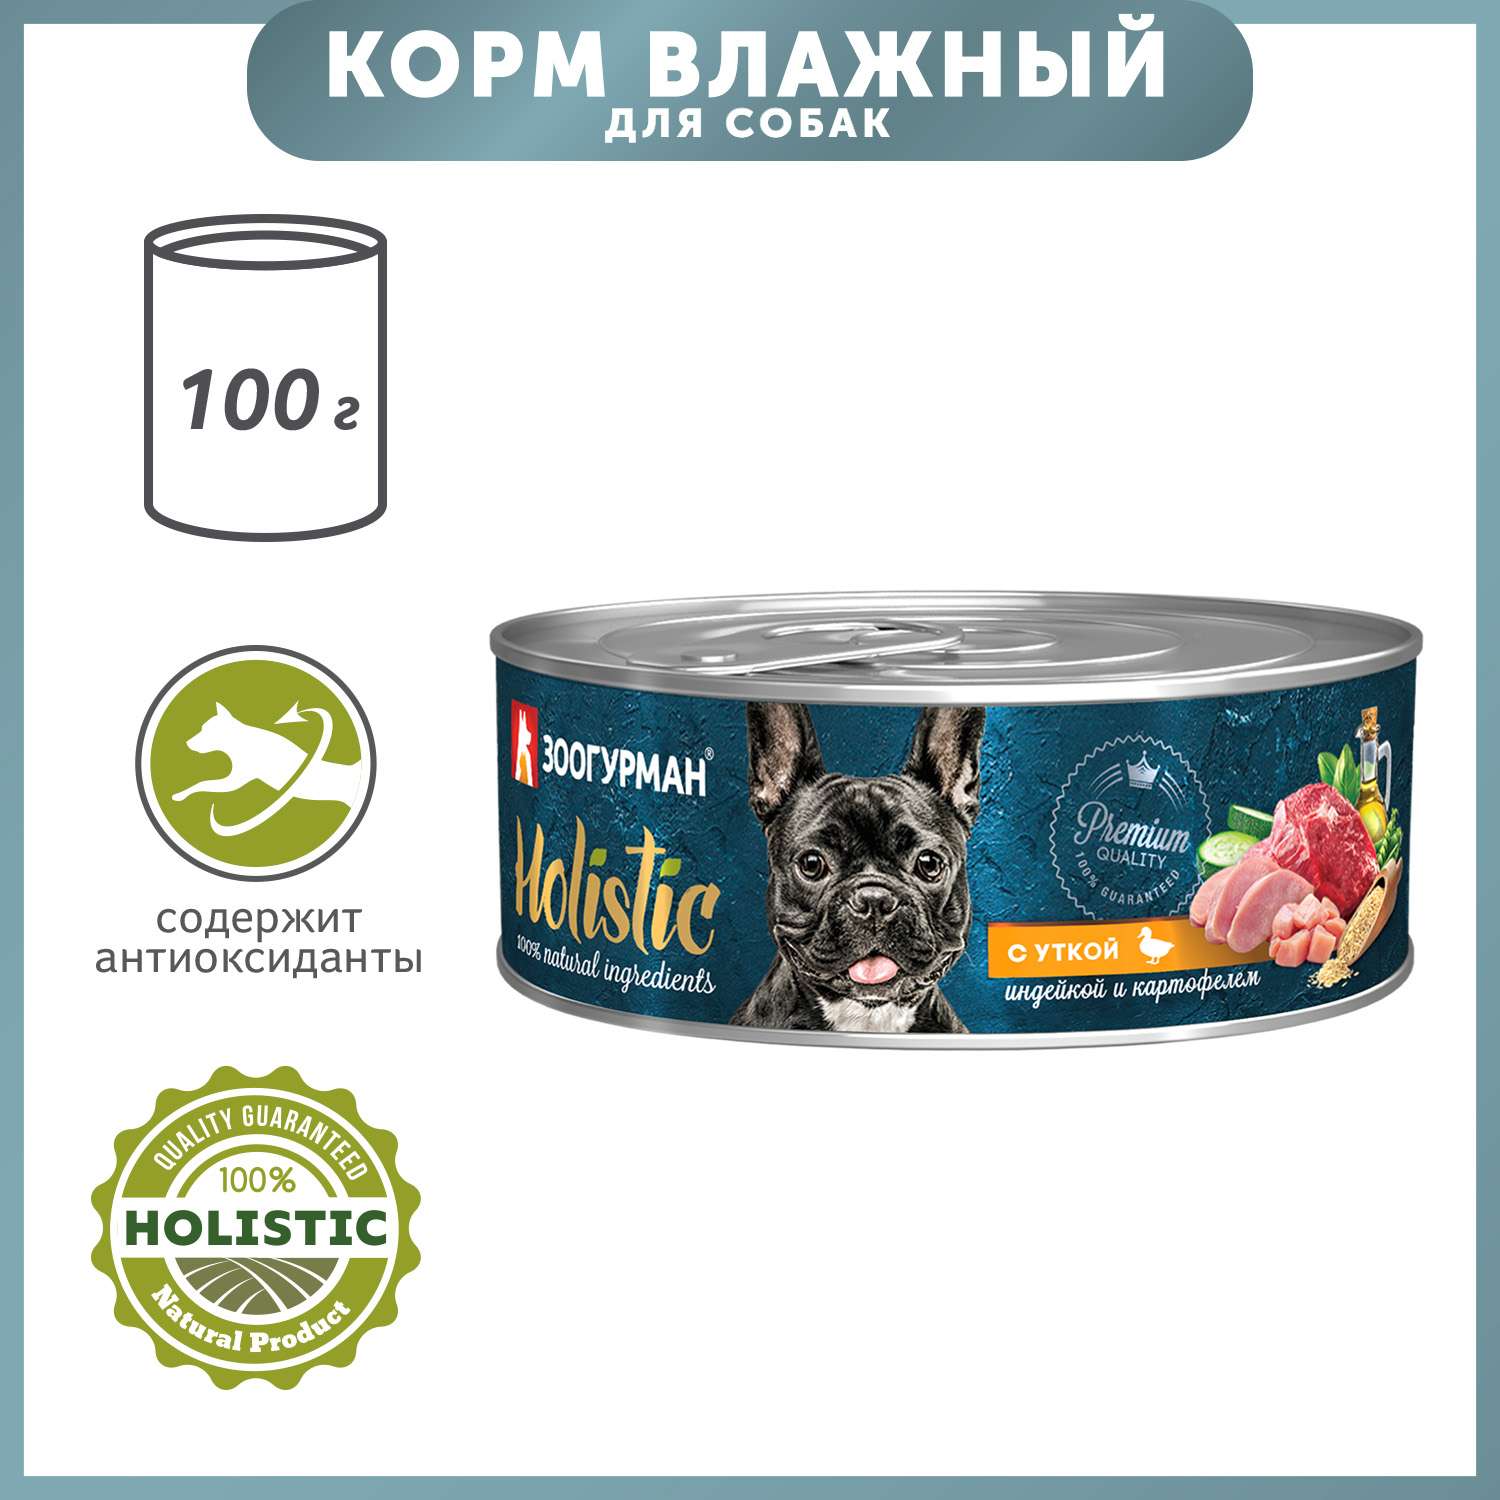 Корм для собак Зоогурман 100г Holistic с уткой индейкой и картофелем консервированный - фото 1